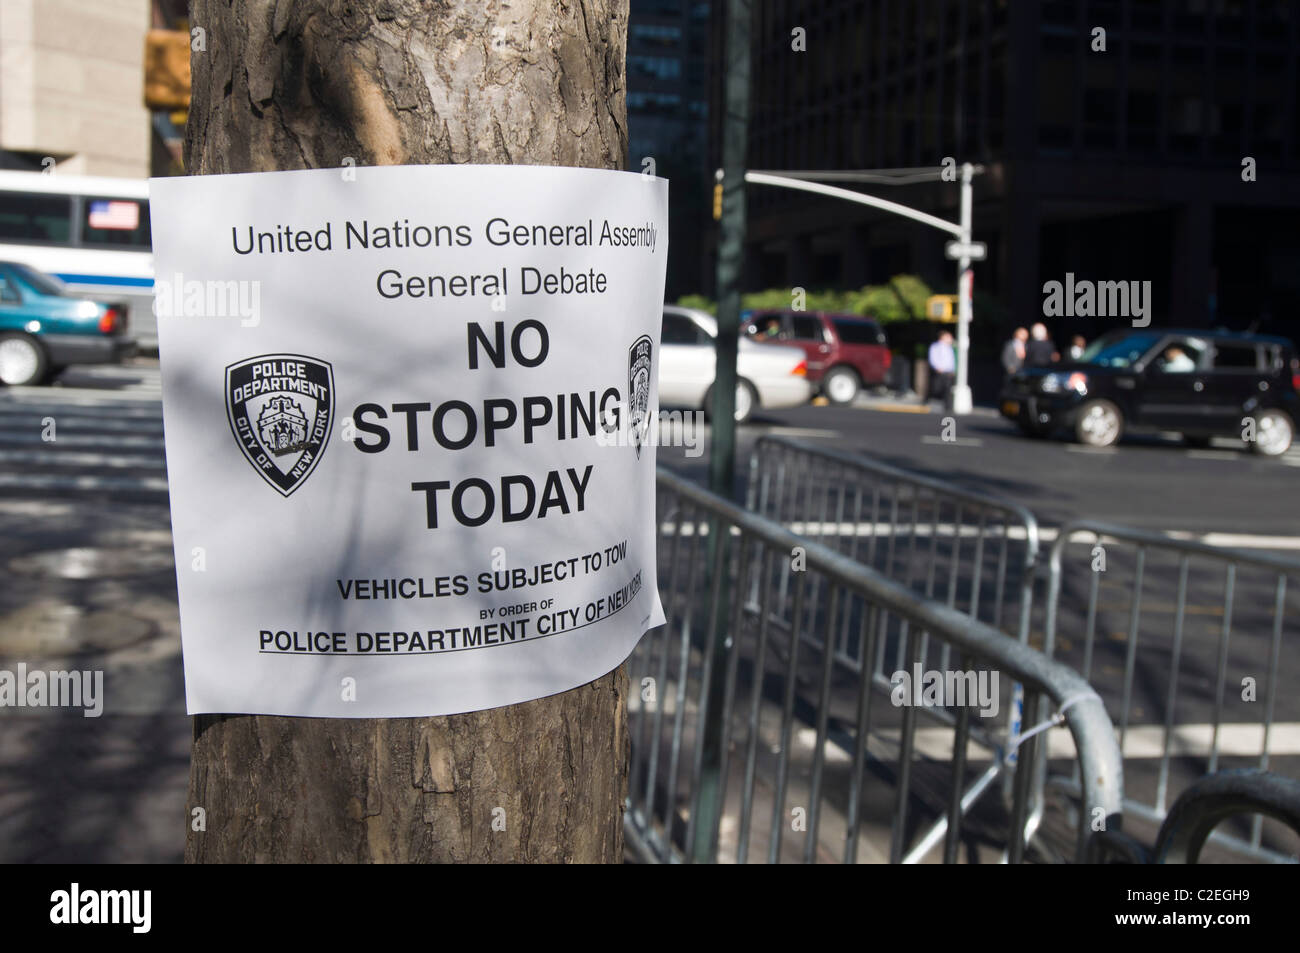 Organisation des Nations Unies Assemblée générale, débat général, aucun signe d'arrêt aujourd'hui près de siège de l'ONU, New York City, USA Banque D'Images